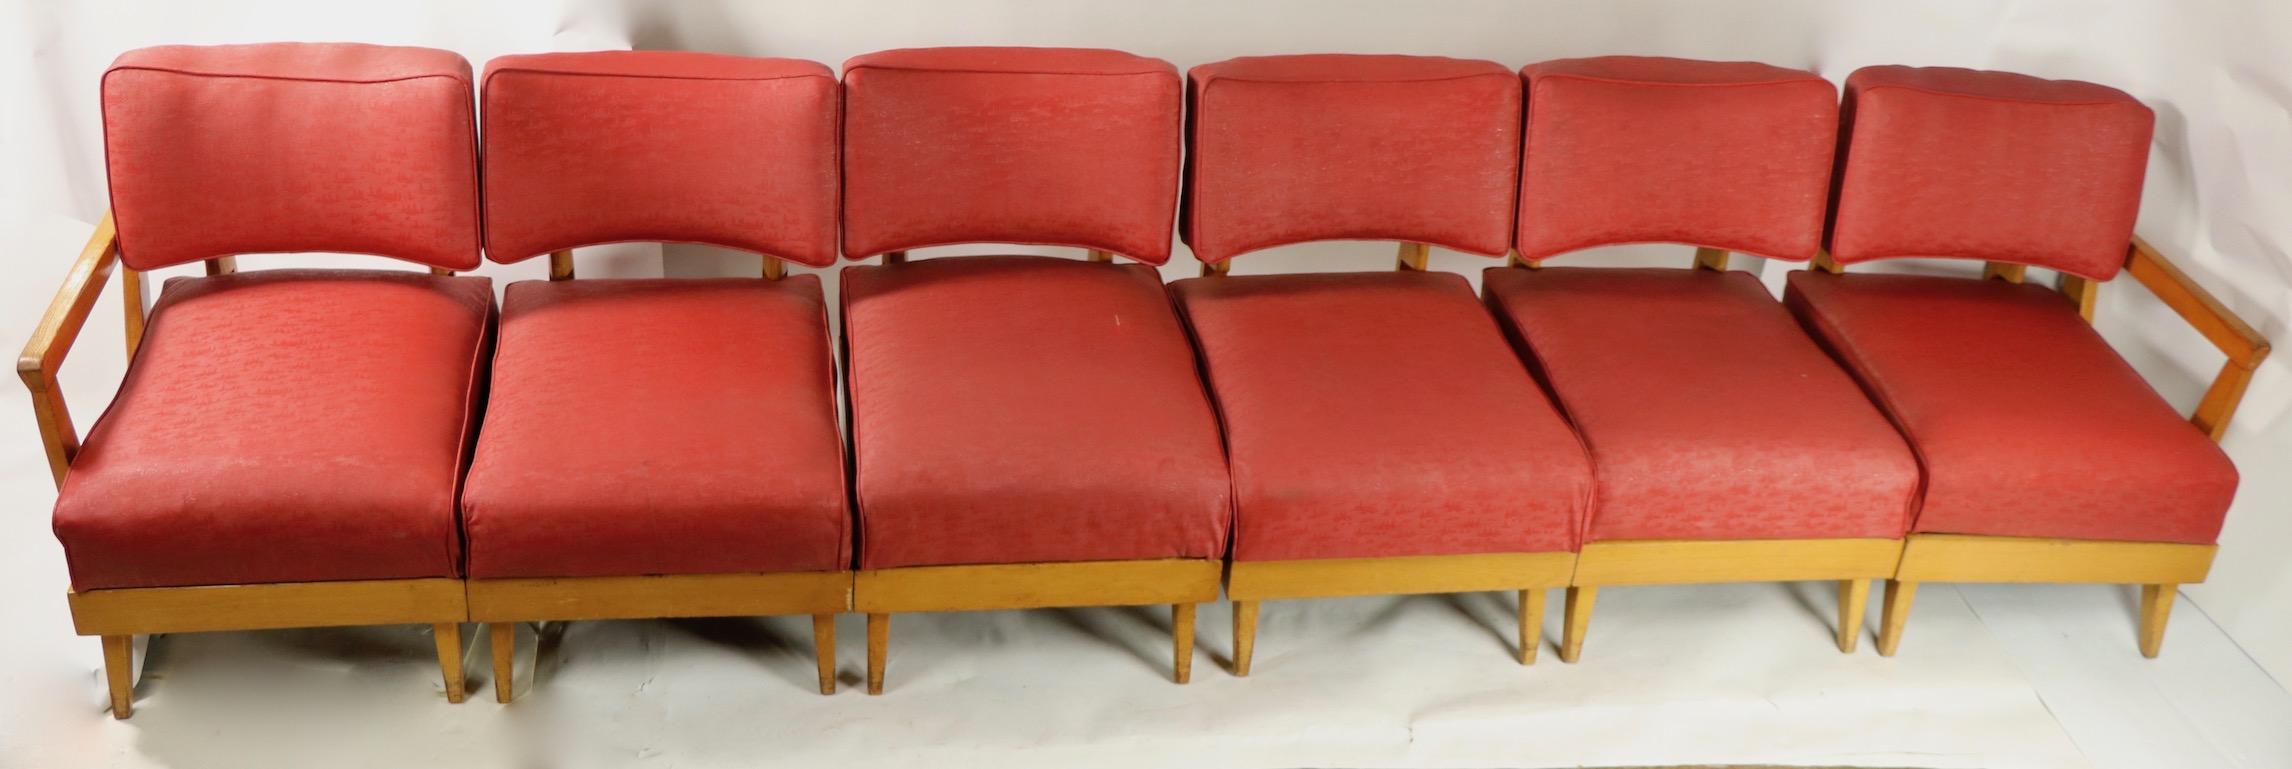 Ungewöhnliches Sektionssofa oder modulares Sofa mit 6 verschiedenen Stuhlabschnitten, die miteinander verbunden werden können, um ein sehr langes Sofa (143 Zoll) zu bilden, oder in kürzeren Konfigurationen verwendet werden können, jeder Stuhl ist